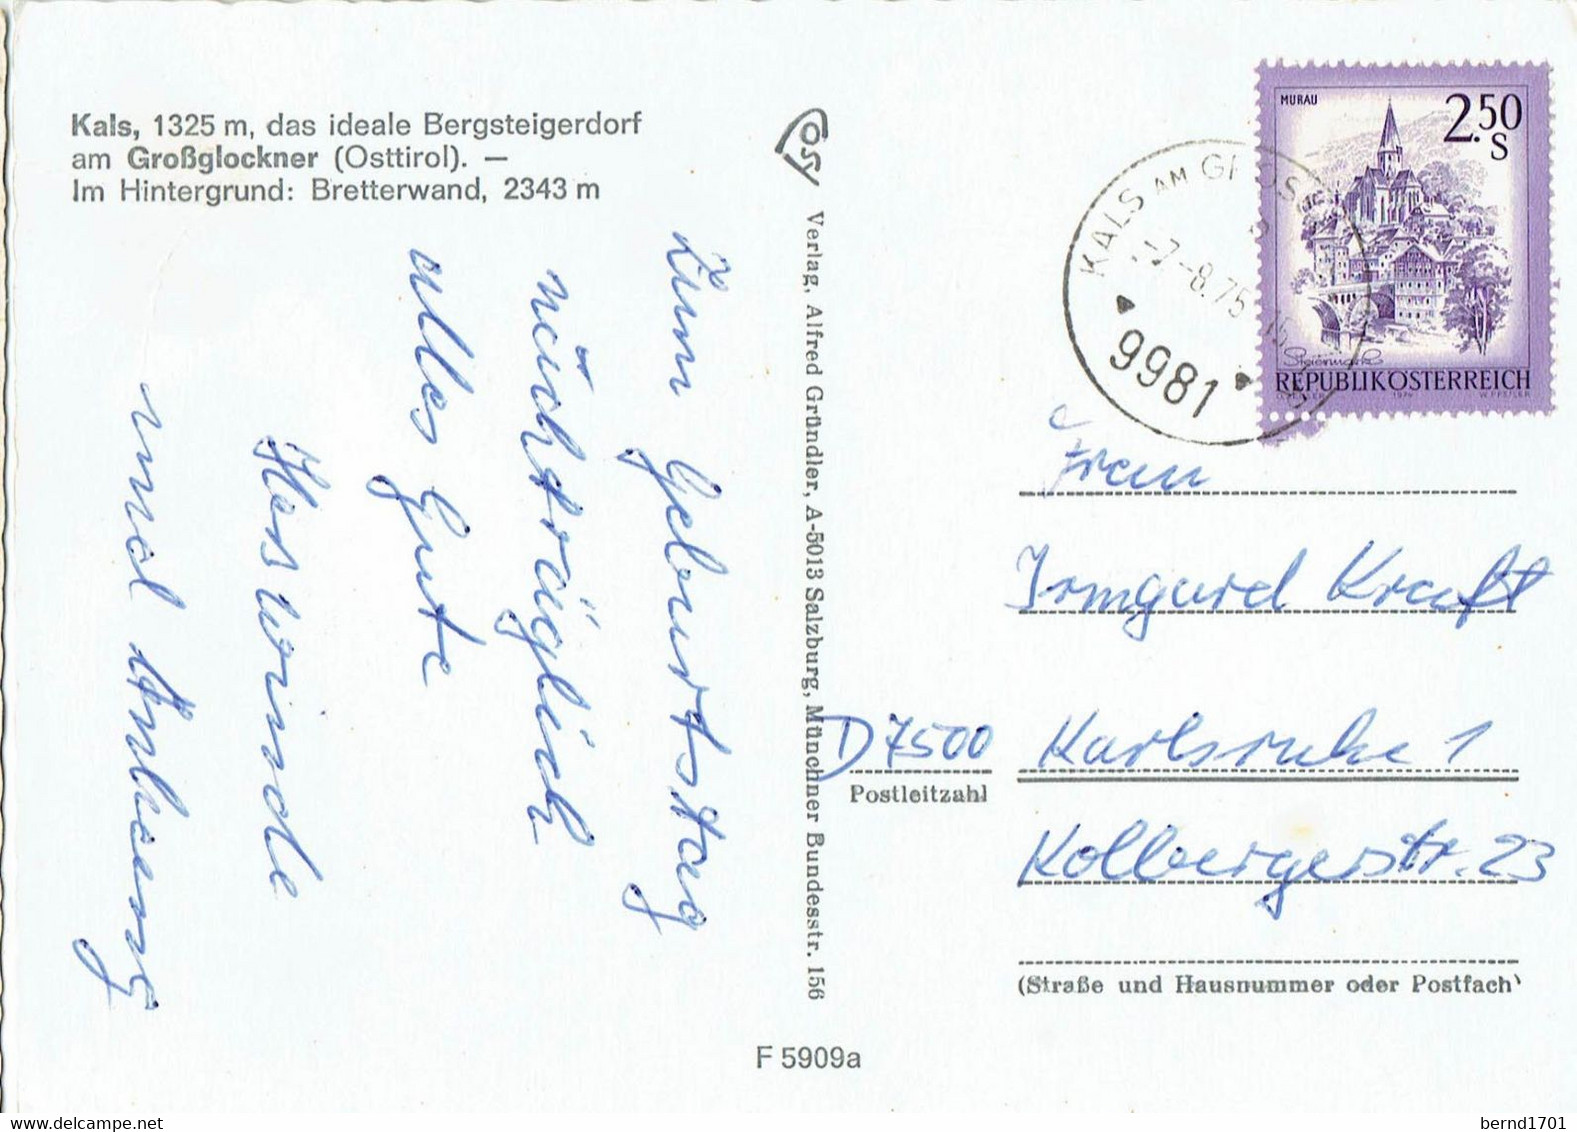 Österreich / Austria - Kals # Ansichtskarte Gebraucht / View Card Used (X1448) - Kals